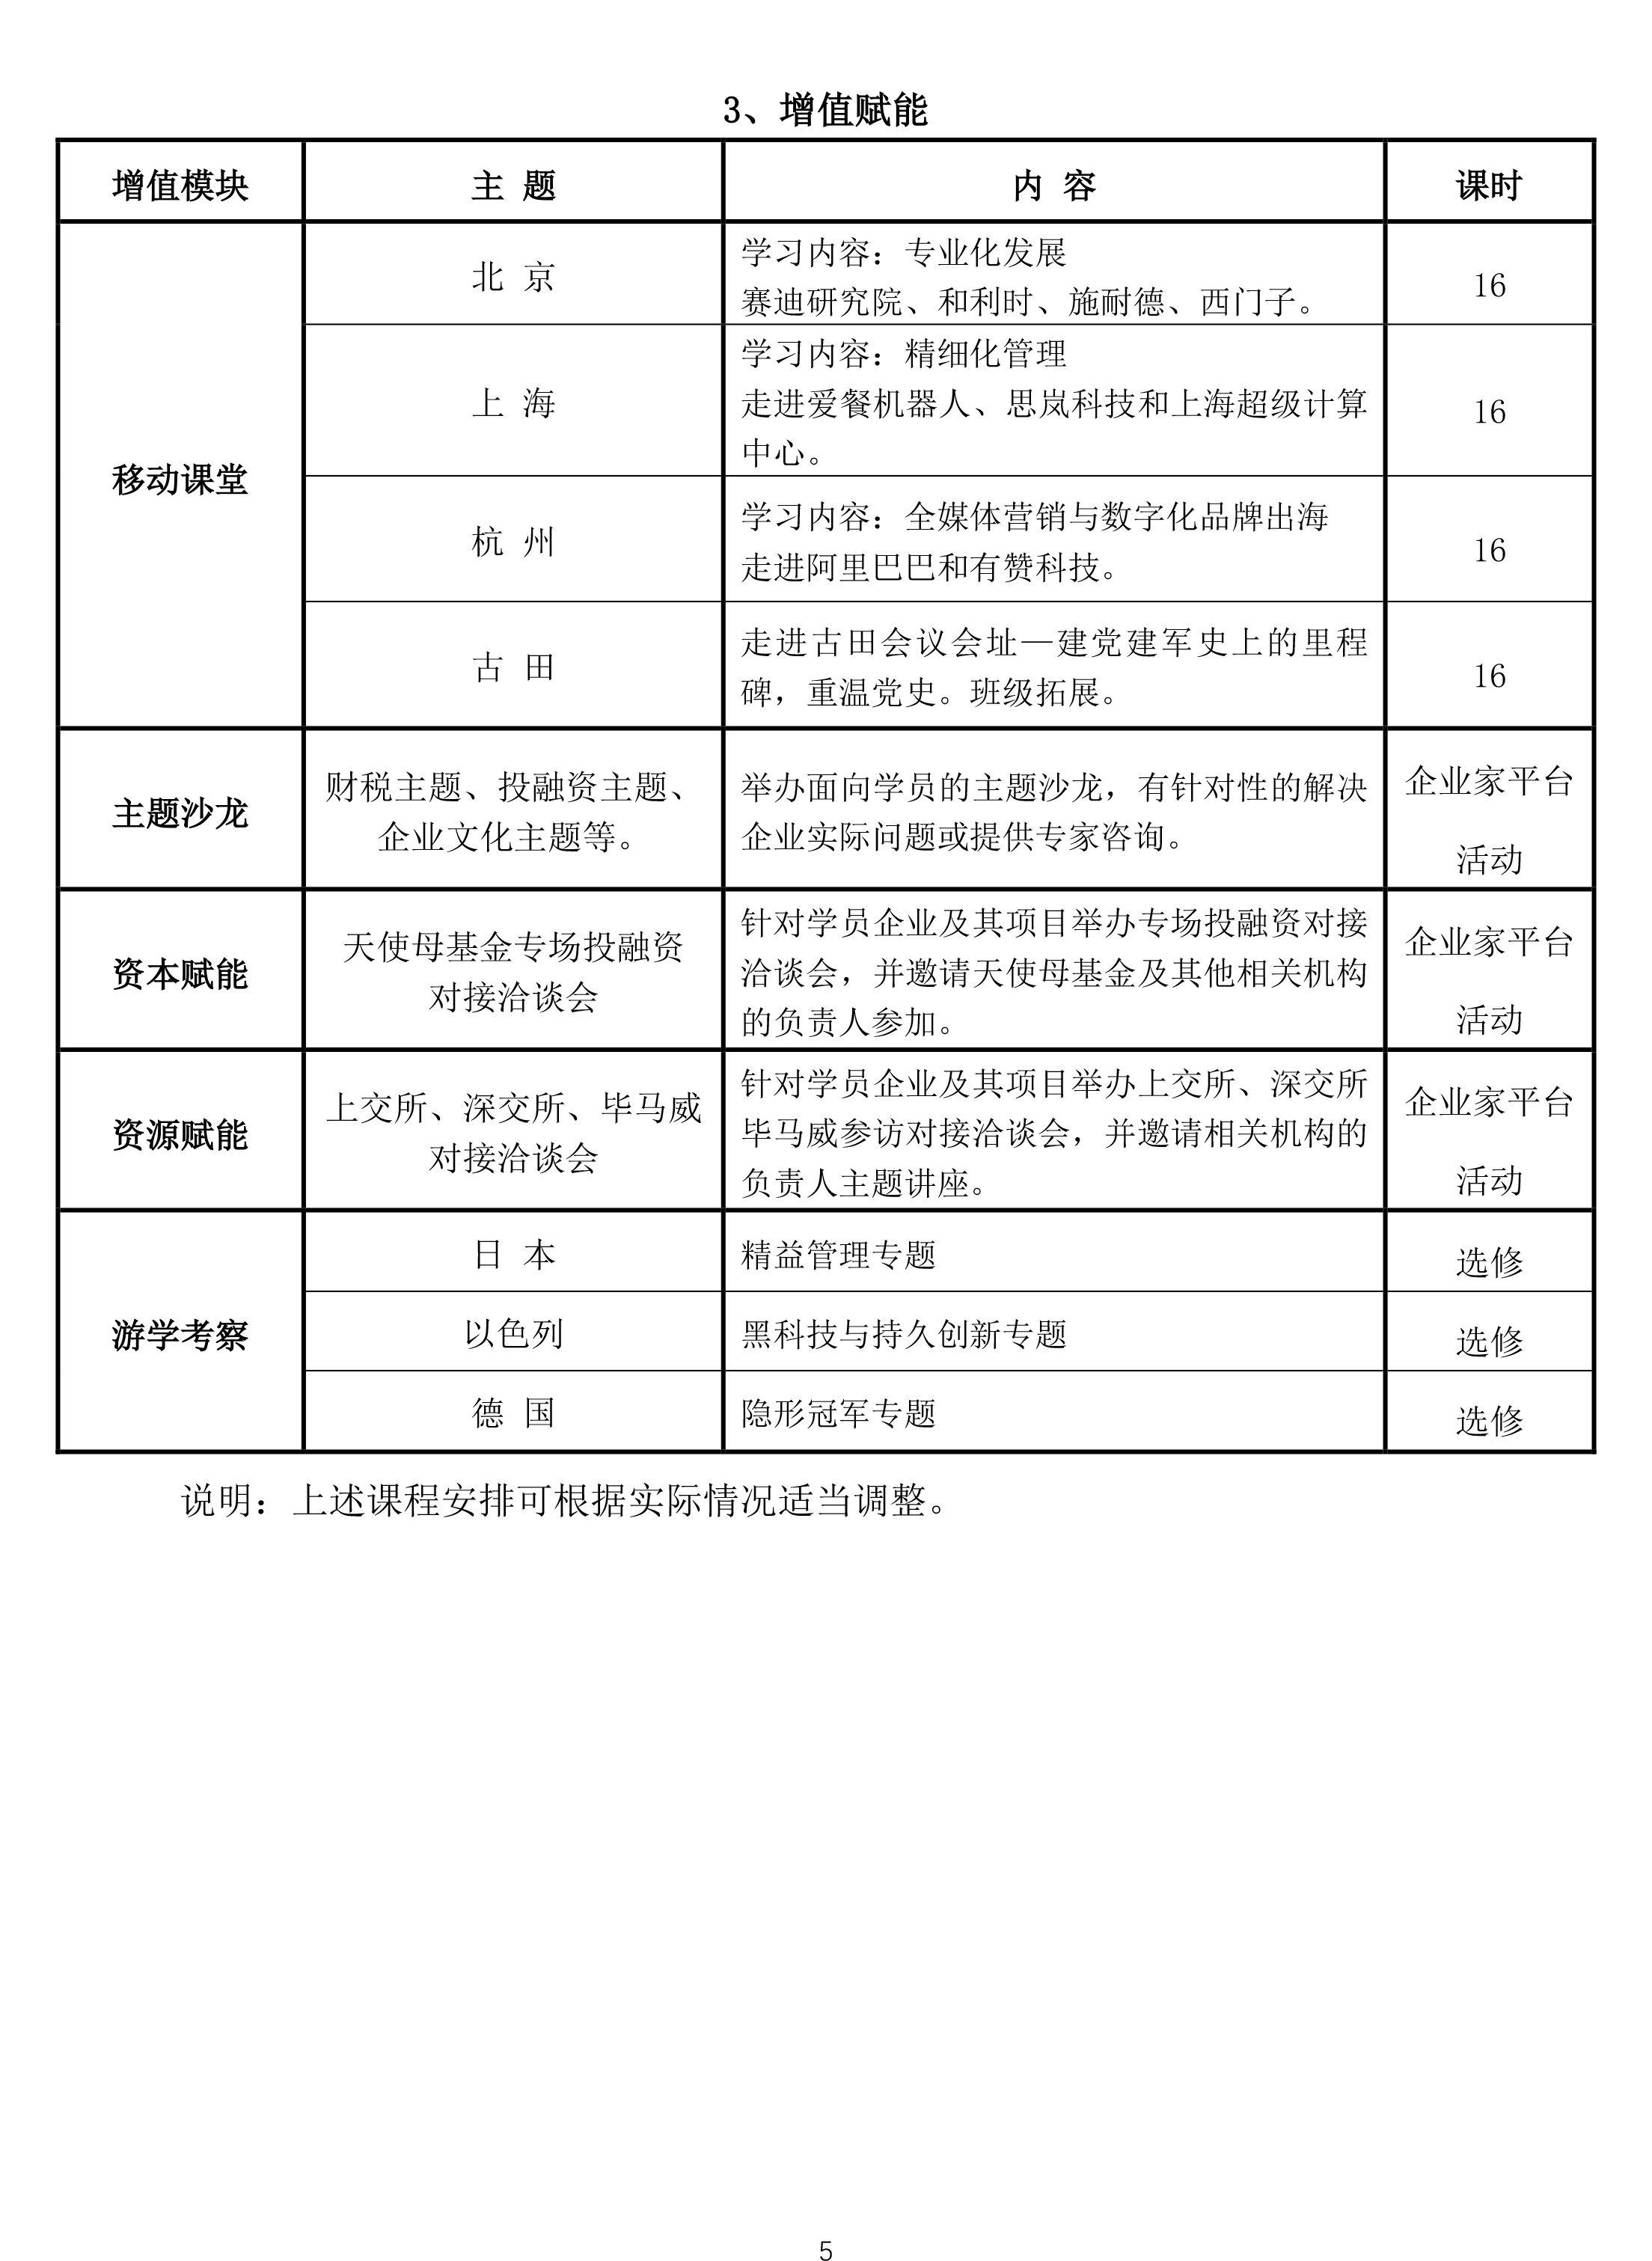 【北大】深圳市民营及中小企业专精特新高级研修班（第1期）简章20210120(1)-5.png